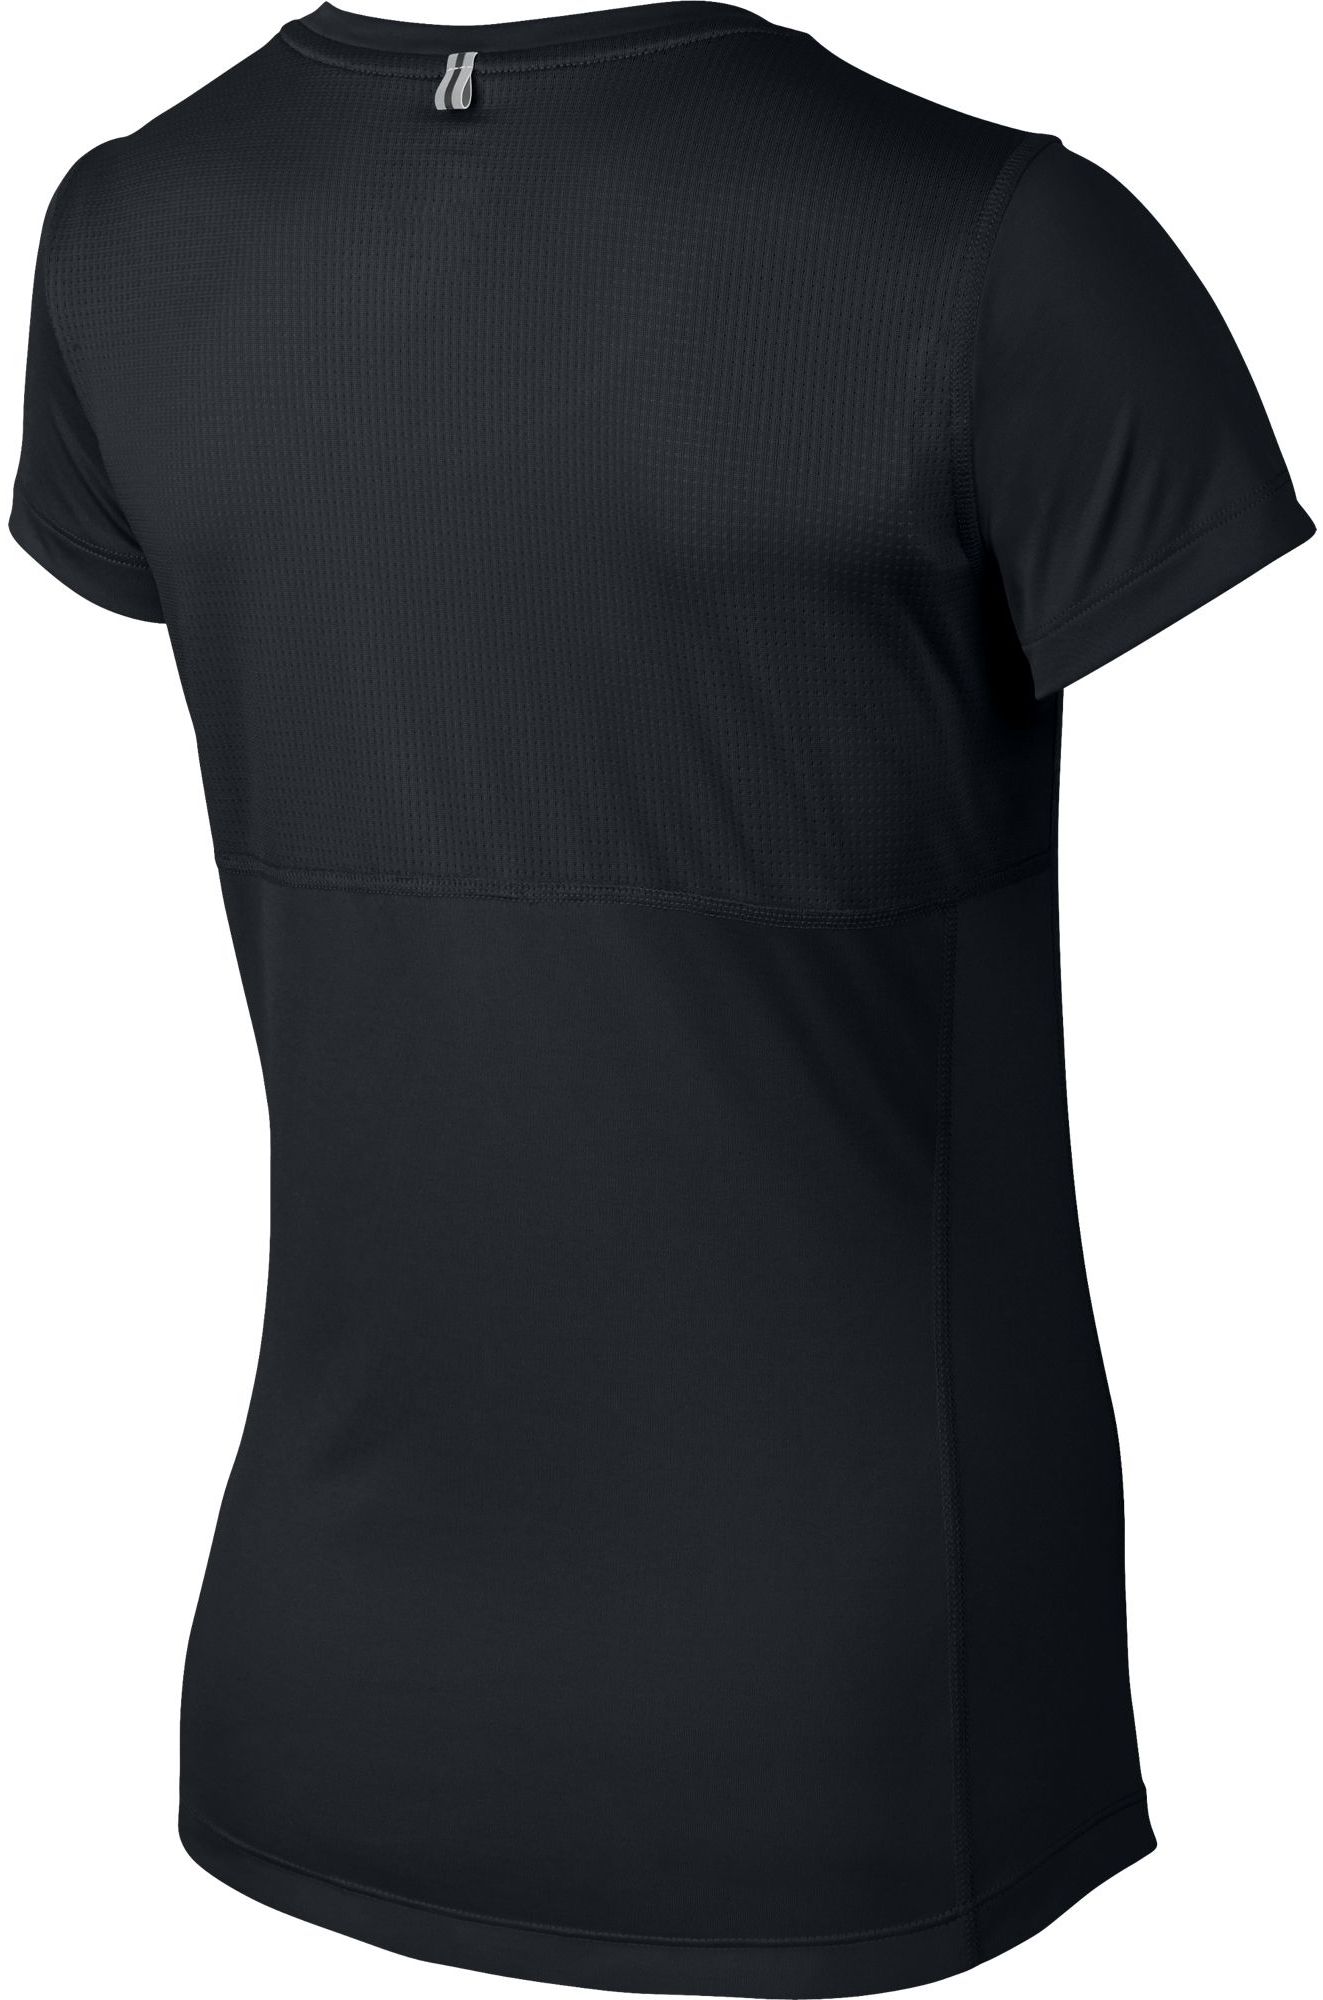 MILER V-NECK - Dámské běžecké triko